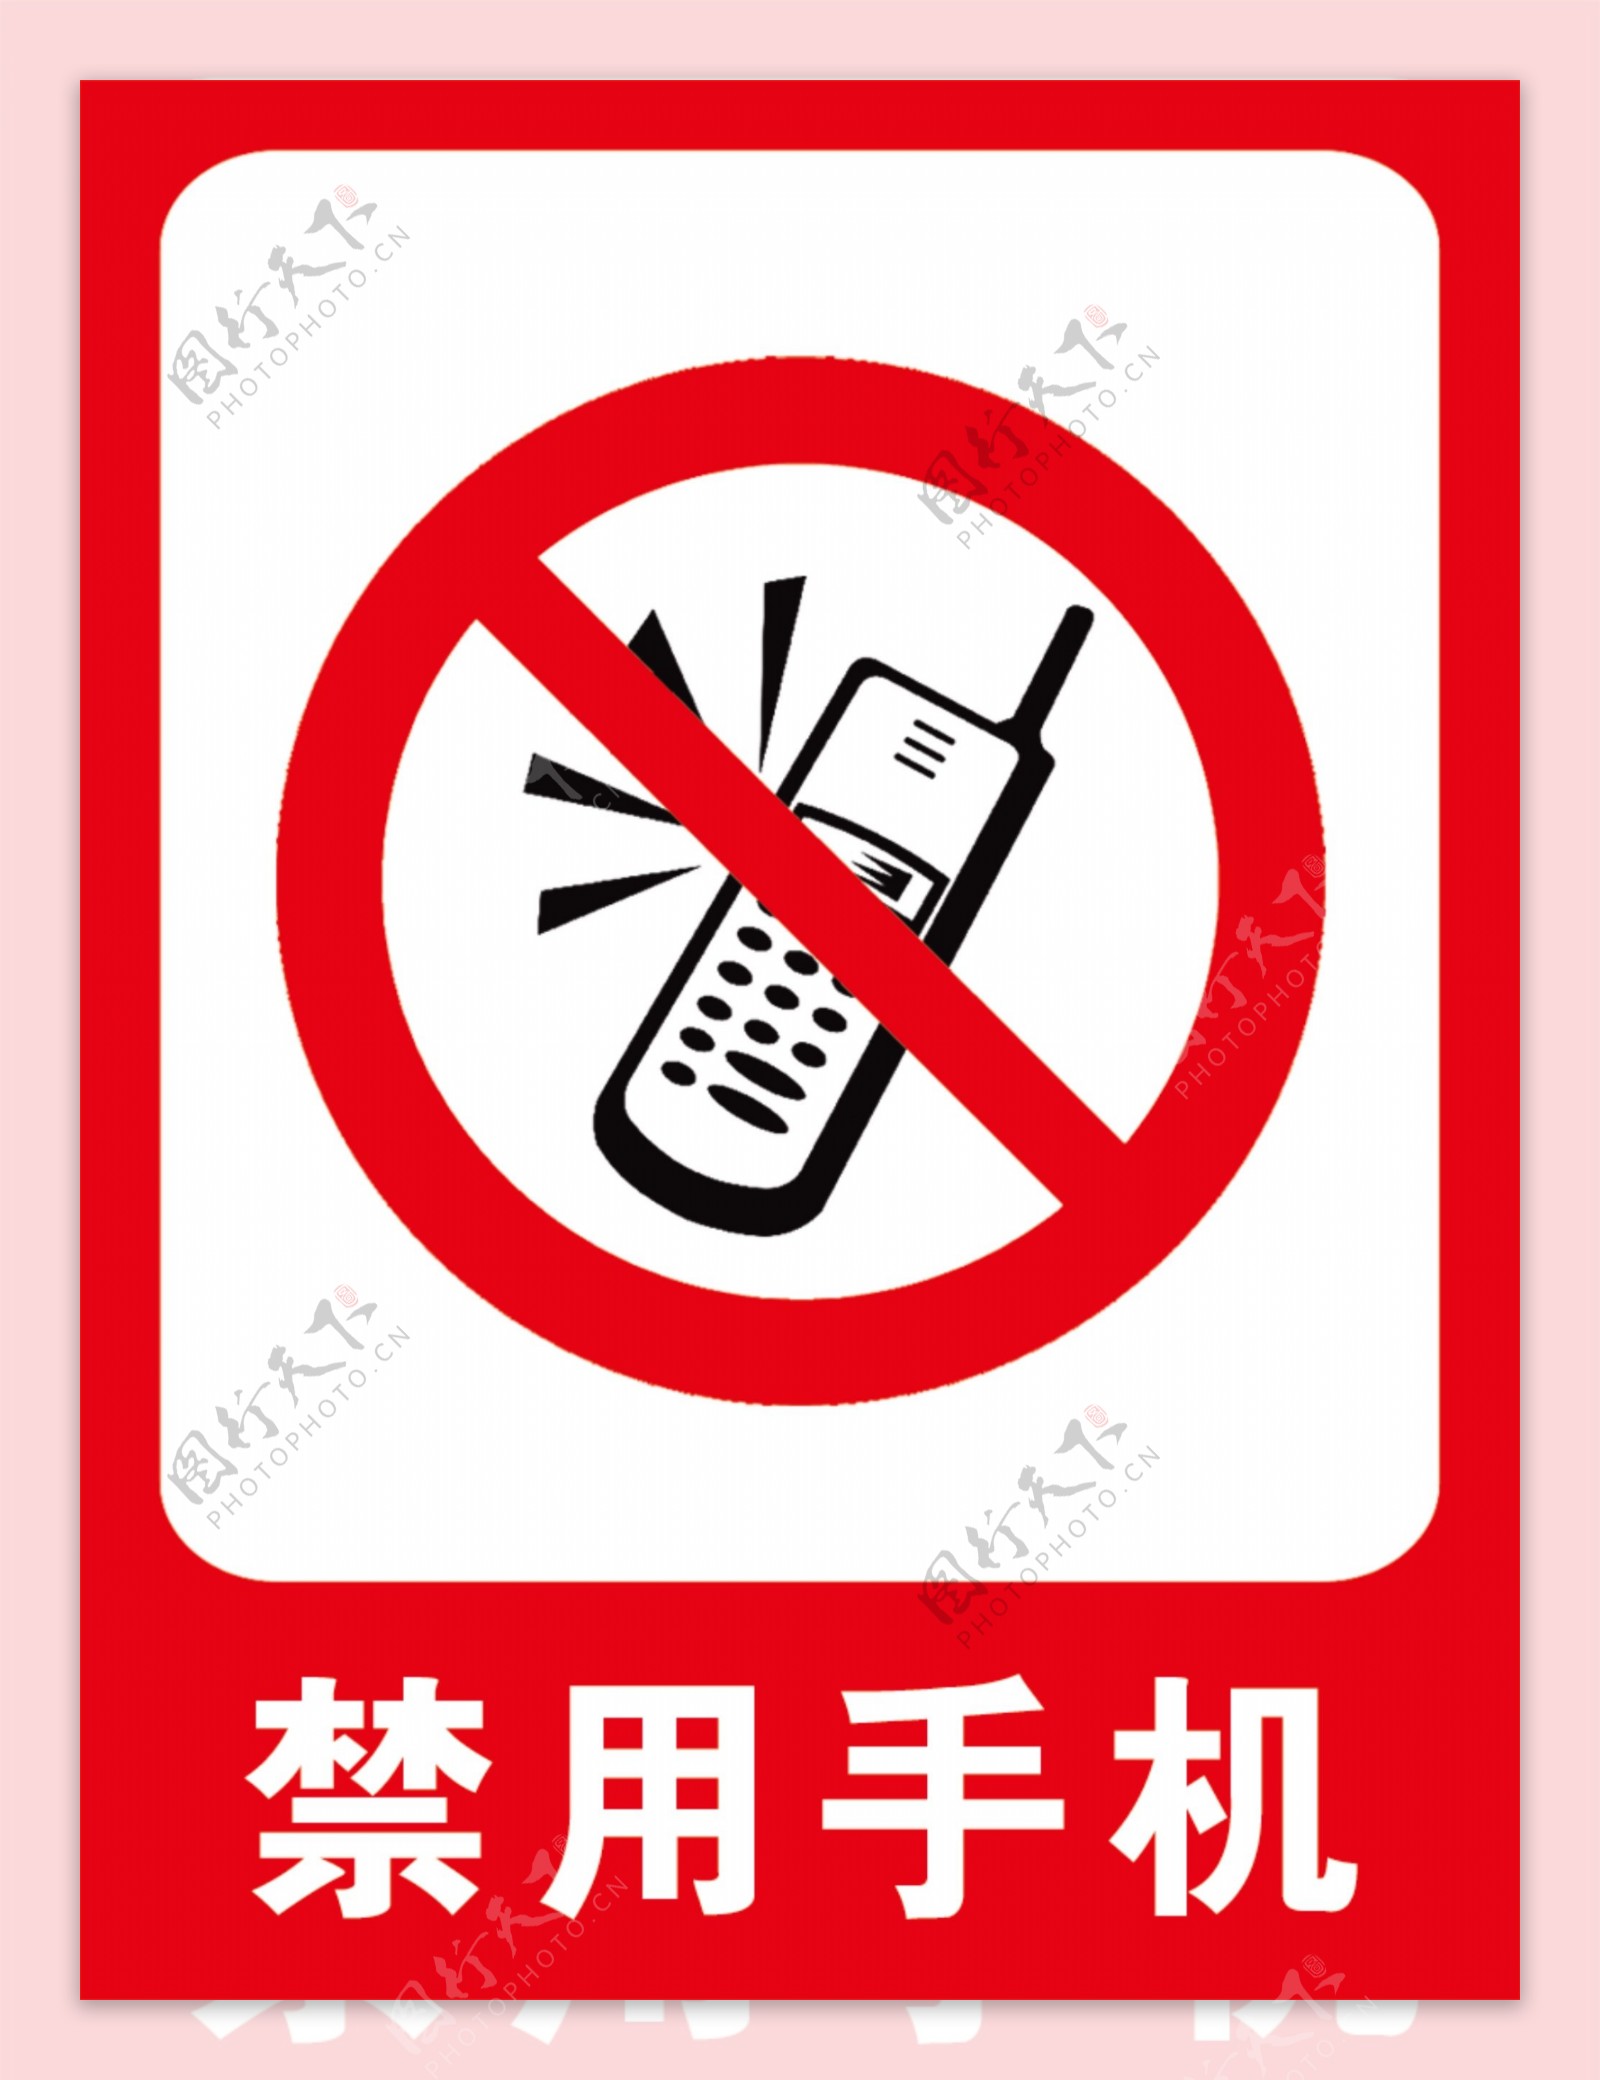 禁用手机